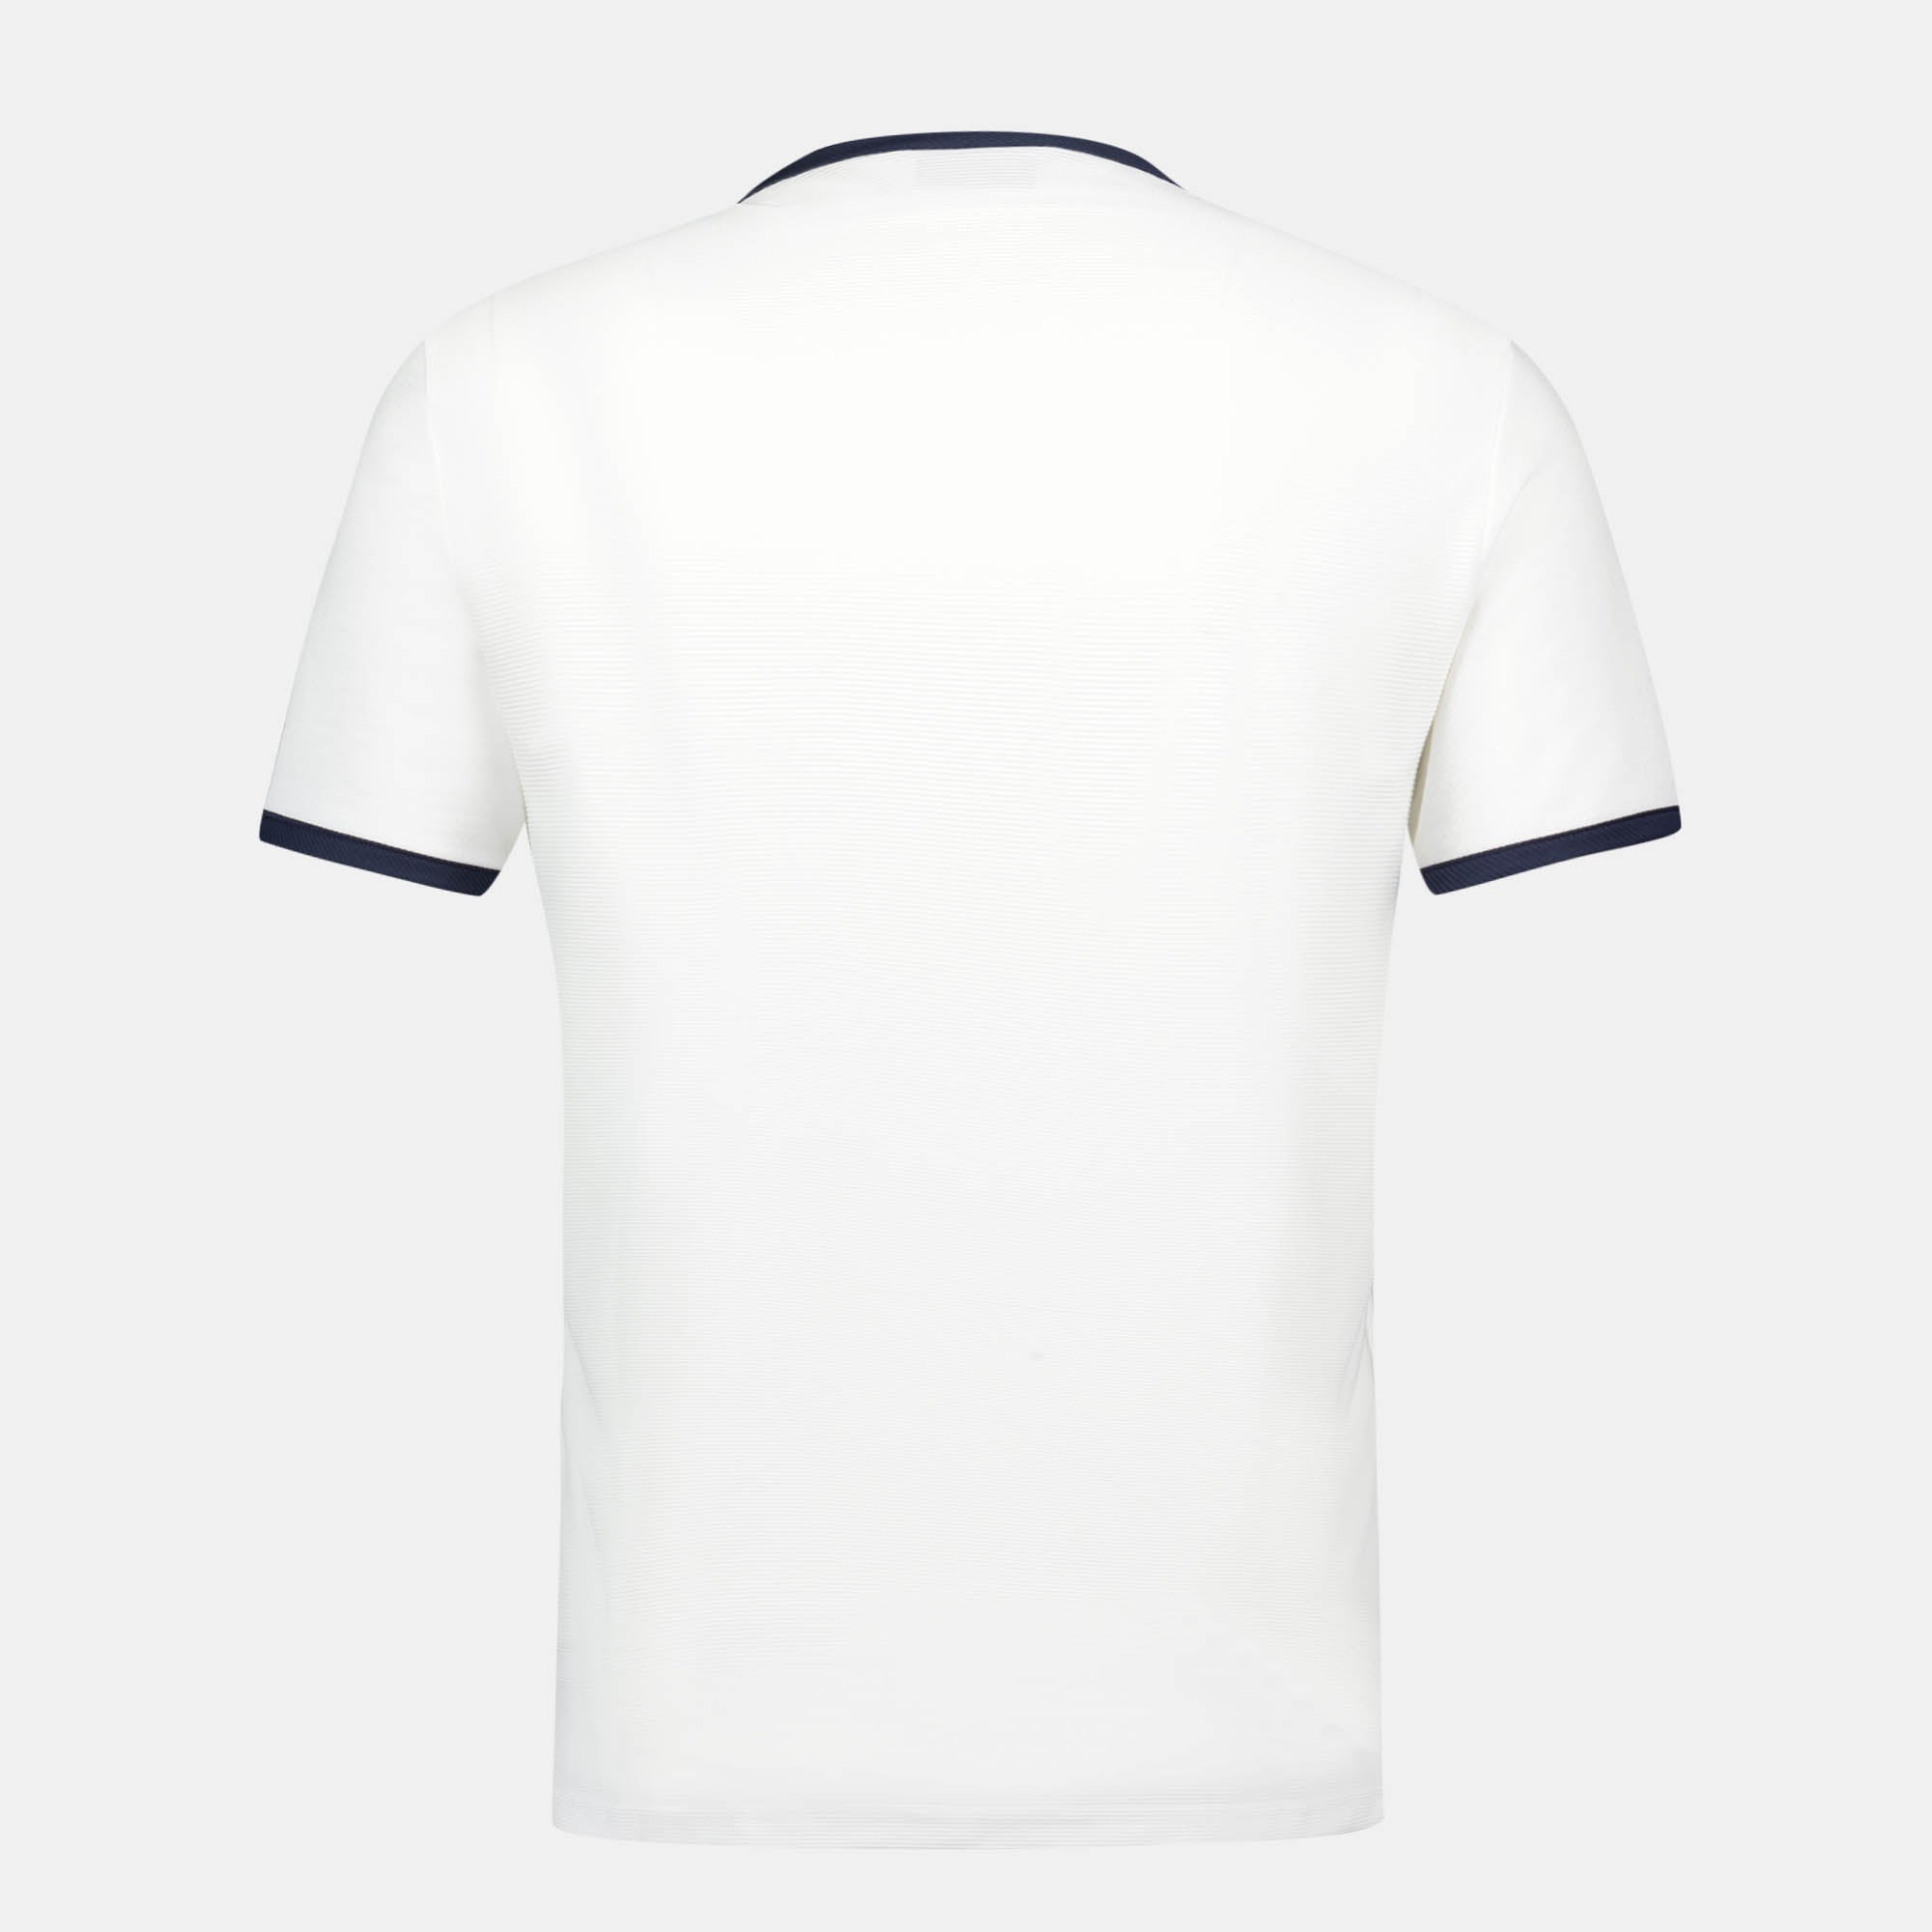 Tennis T-Shirt for men